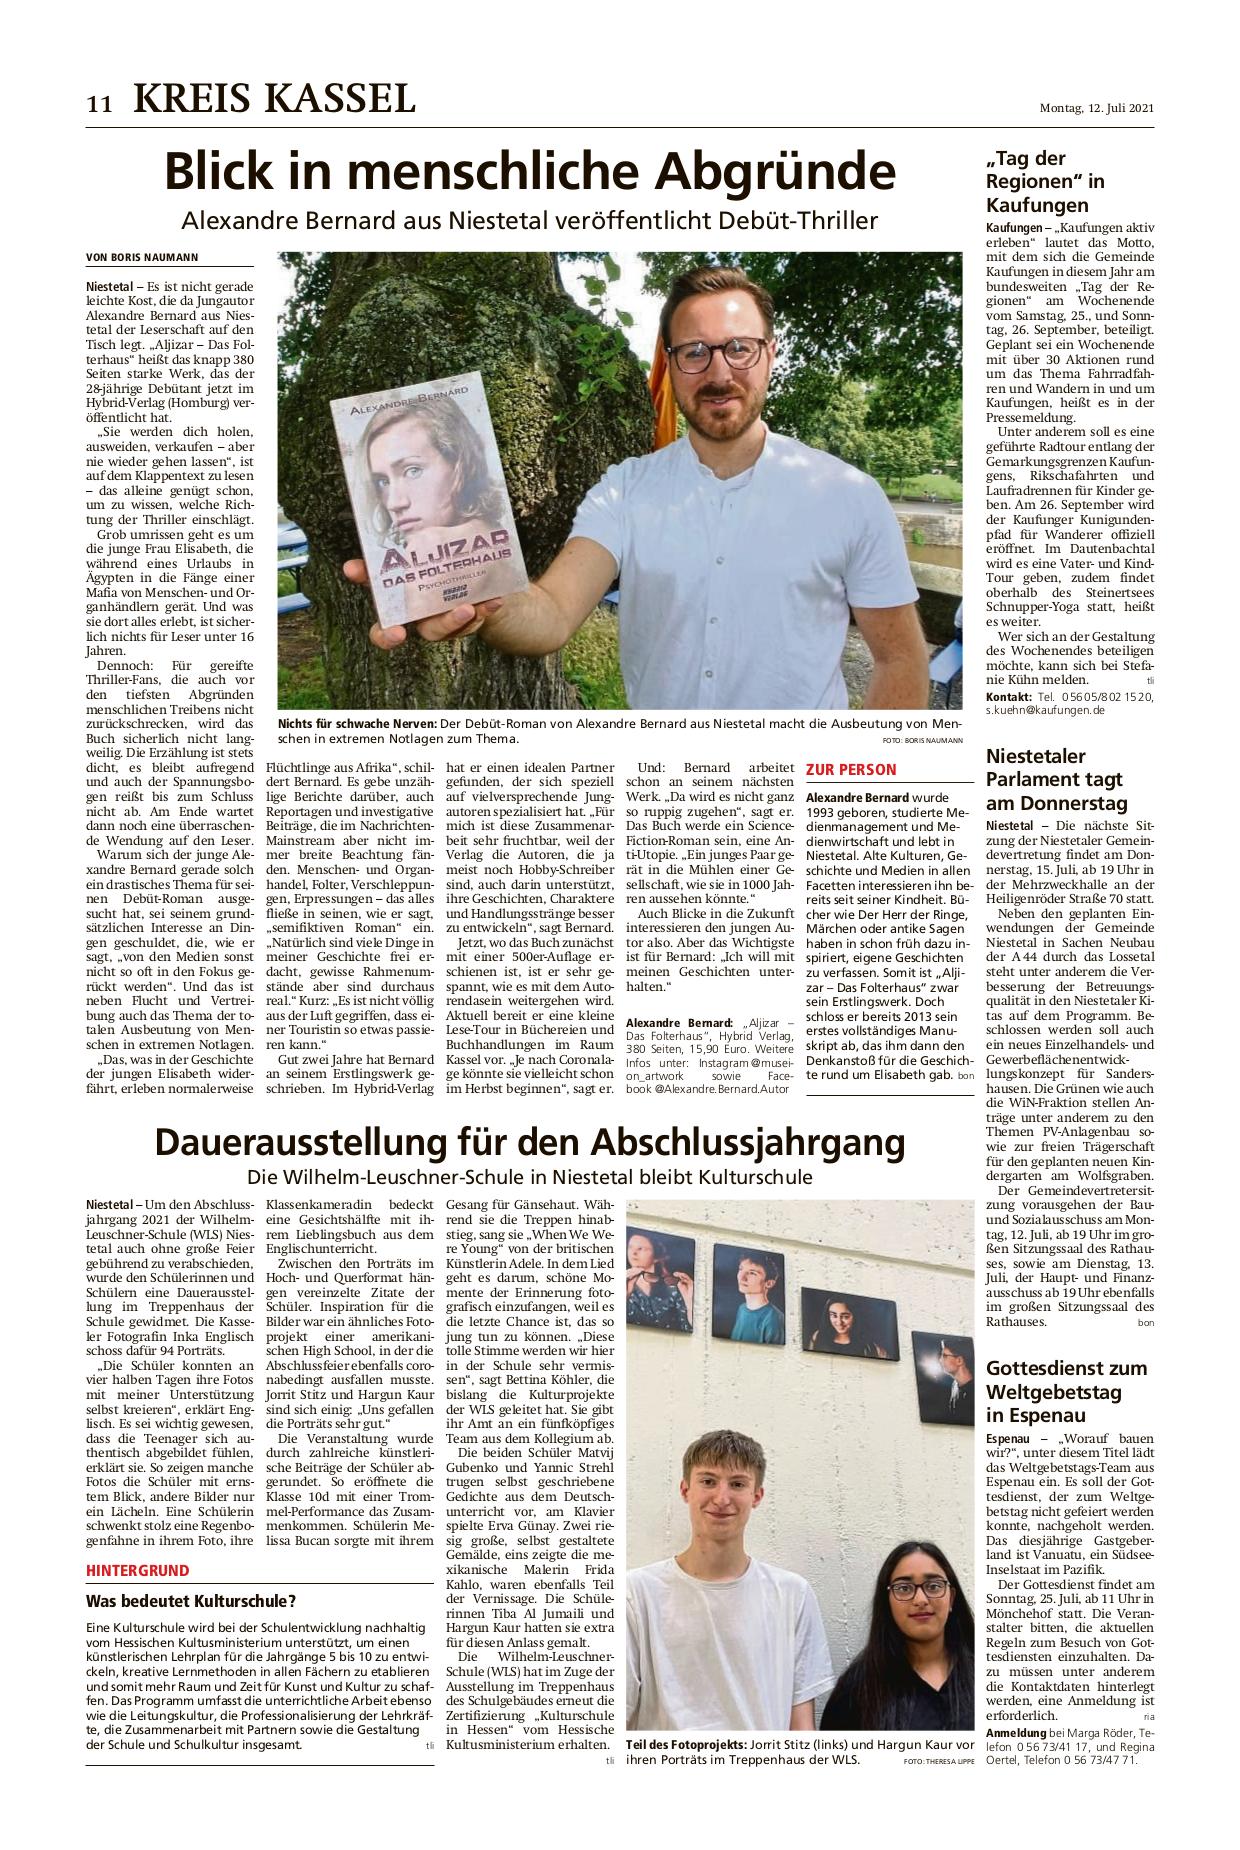 Artikel "Blick in menschliche Abgründe" in der HNA Kreis Kassel